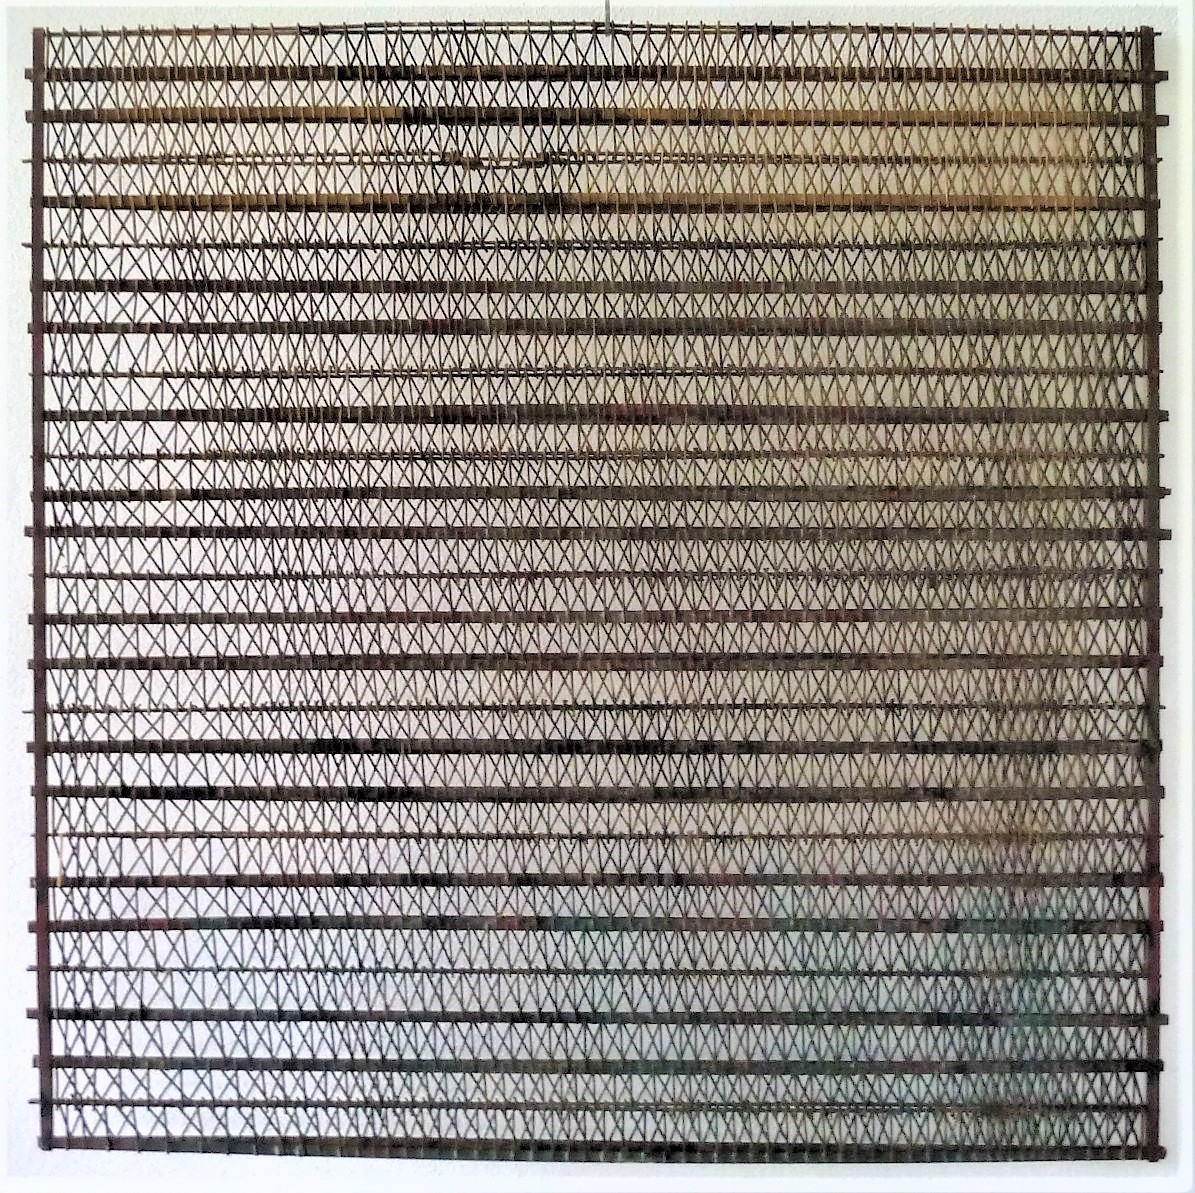 Grille, 1974, Bois peint, 100x100cm